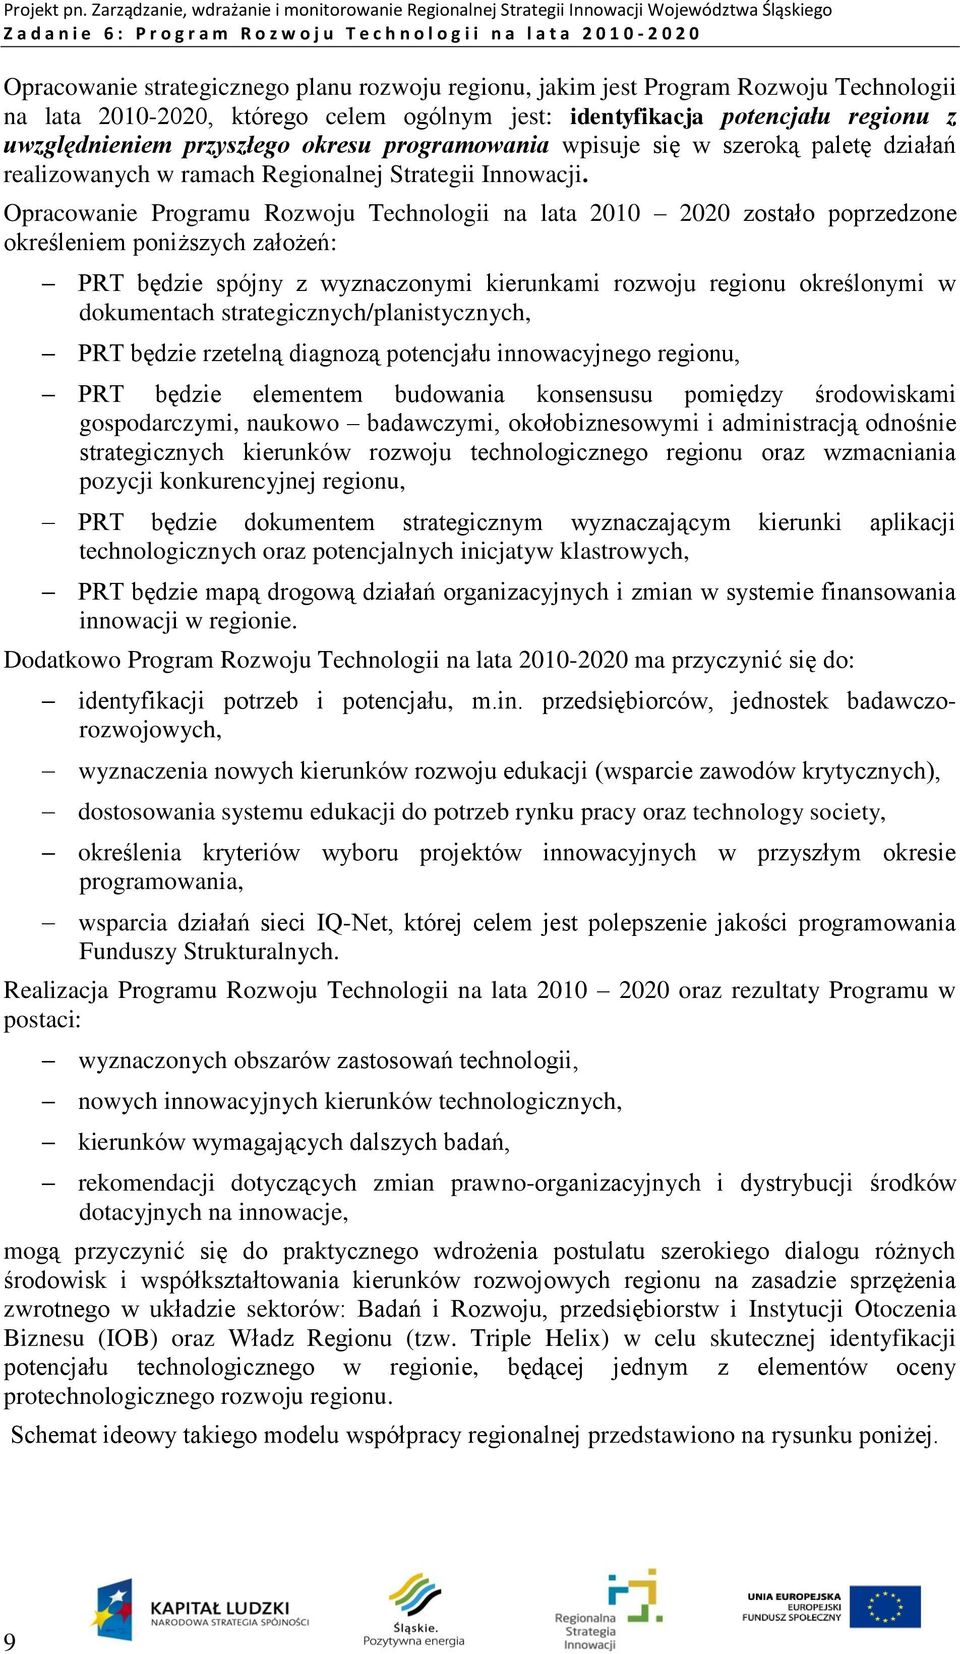 Opracowanie Programu Rozwoju Technologii na lata 2010 2020 zostało poprzedzone określeniem poniższych założeń: PRT będzie spójny z wyznaczonymi kierunkami rozwoju regionu określonymi w dokumentach